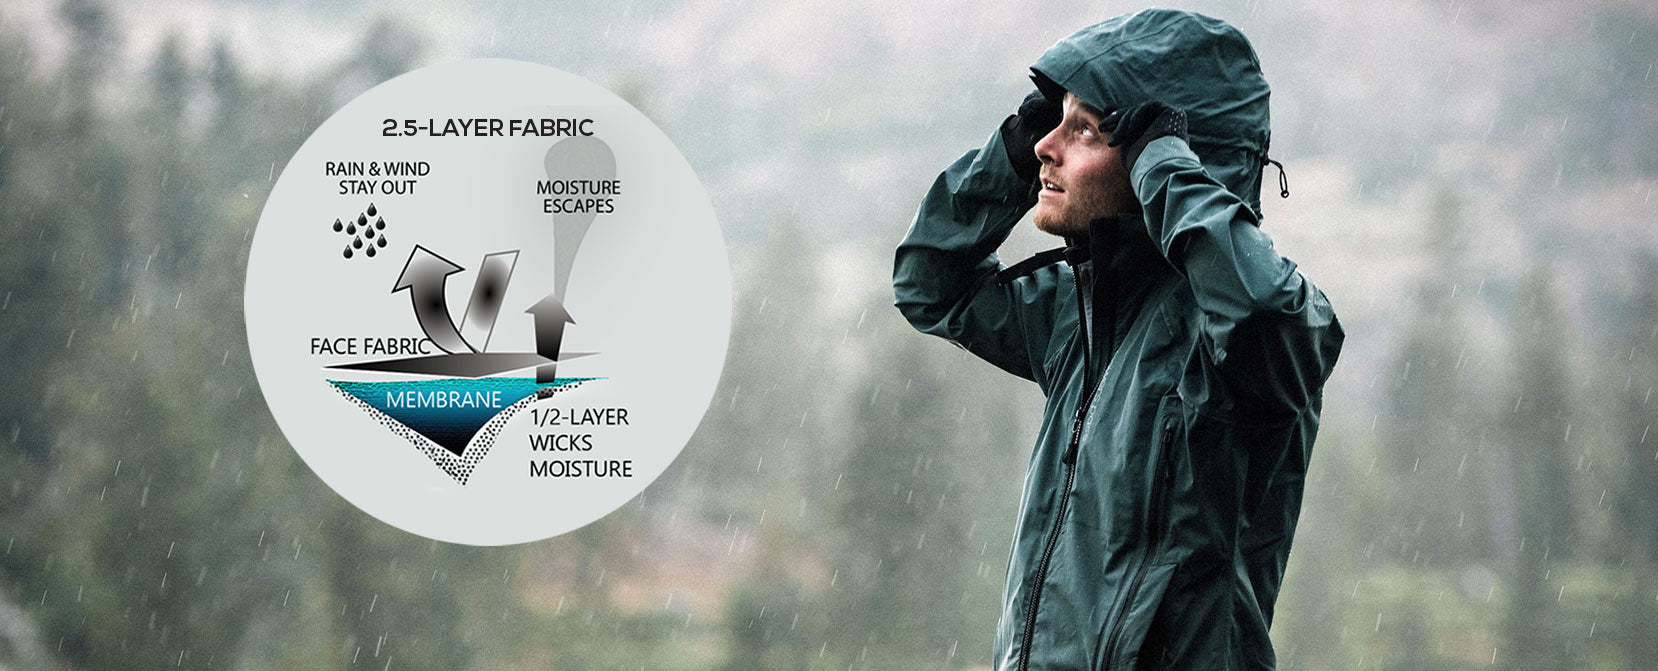 Showers Pass 2.5-Layer waterproof fabric technology